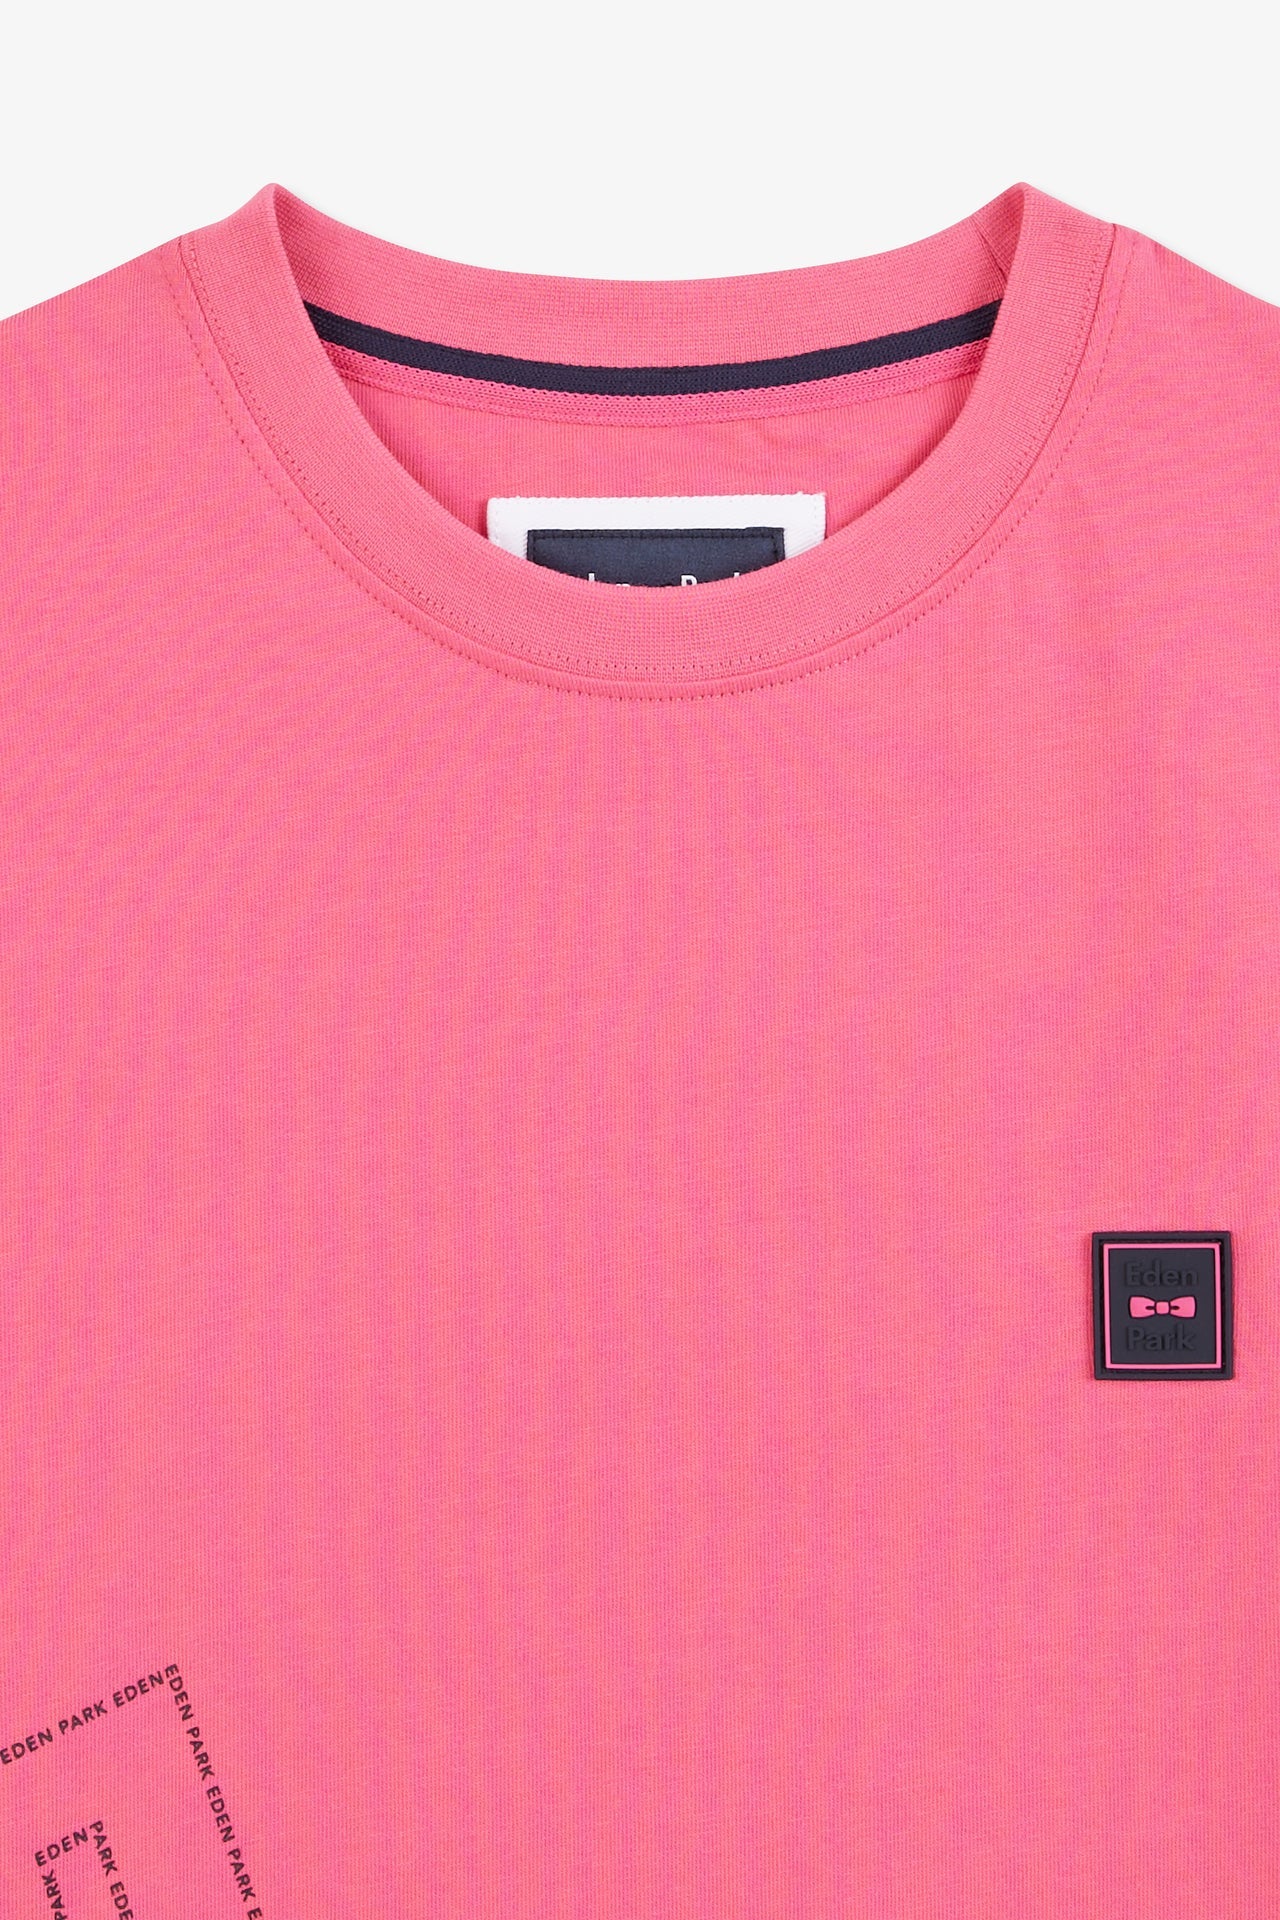 T-shirt rose imprimé Eden Park - Image 7